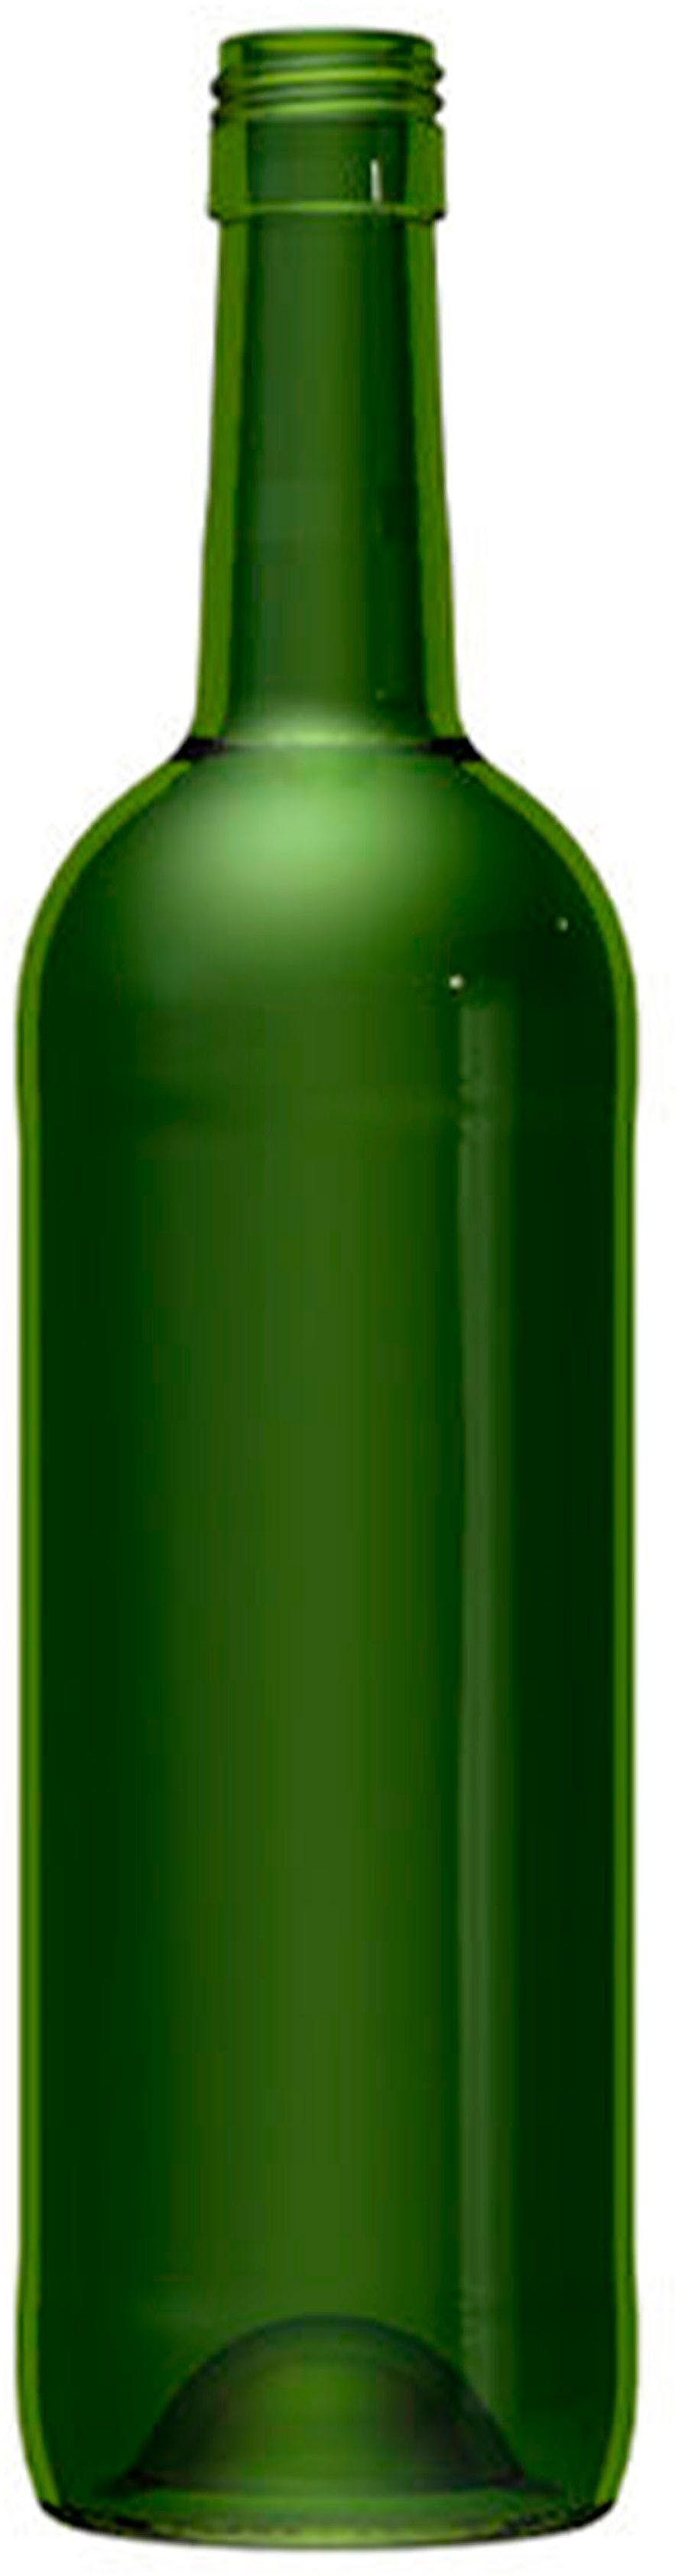 Bottle BORDOLESE  STD 750 ml BG-Screw